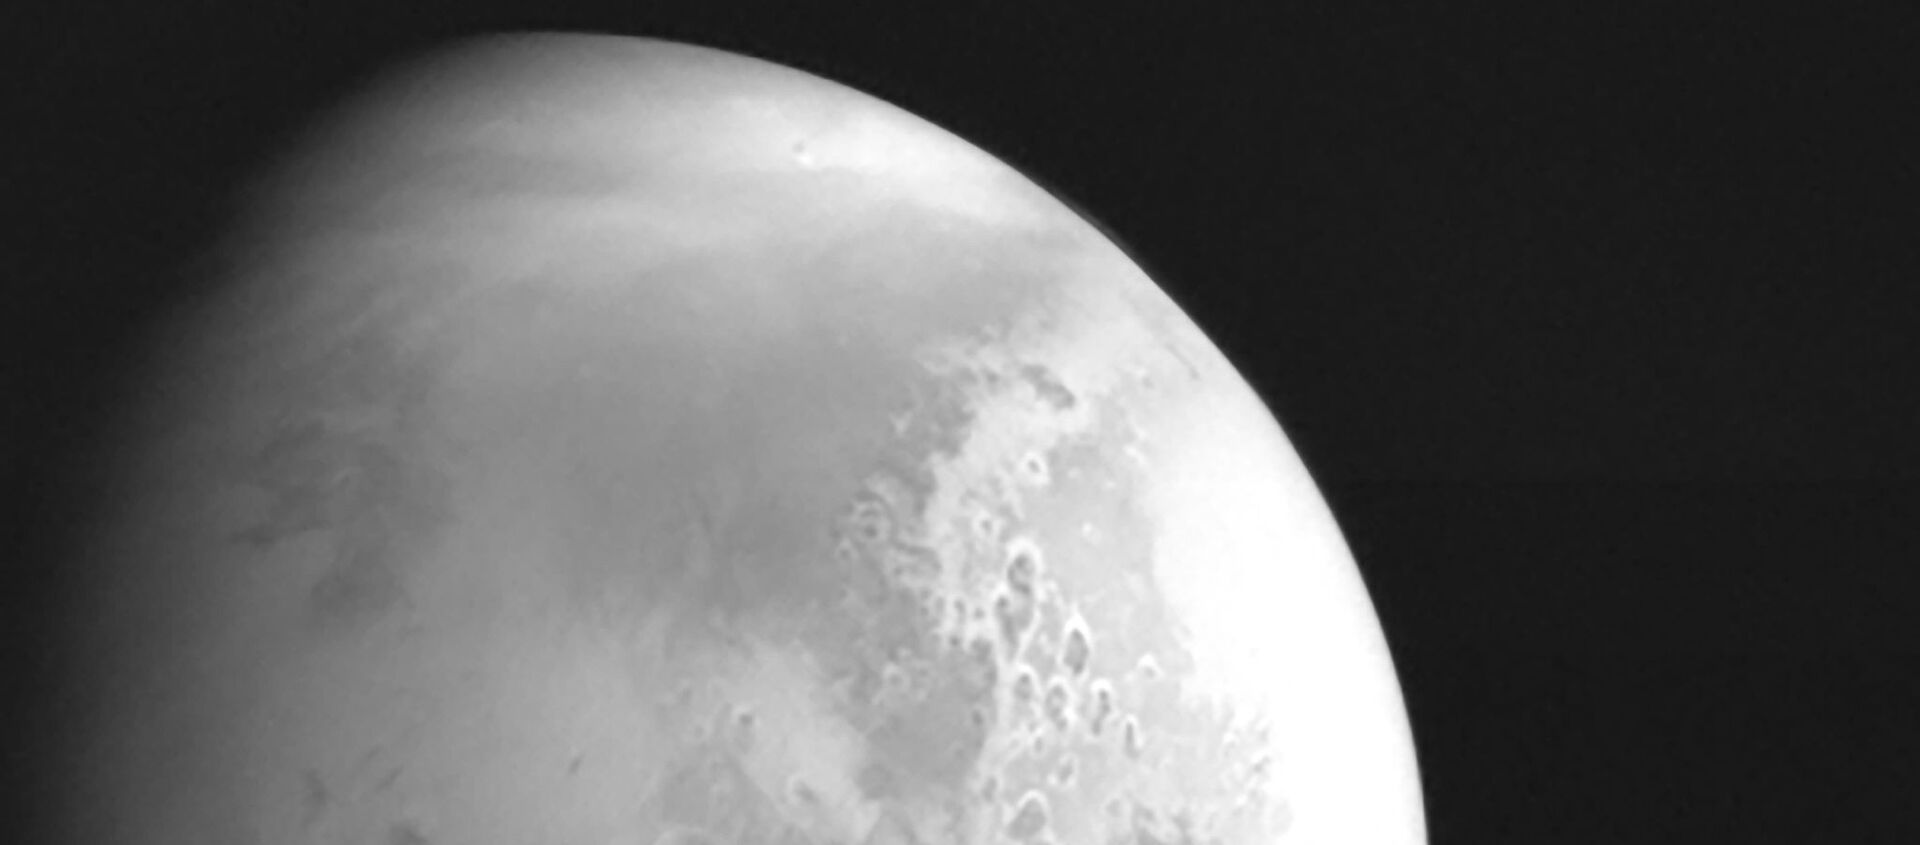 صورة نشرتها الصادرة إدارة الفضاء الوطنية الصينية لكوكب المريخ تم التقاطها بواسطة مسبار المريخ الصيني تيانوين-1 في 5 فبراير/ شباط 2021 - سبوتنيك عربي, 1920, 15.02.2021